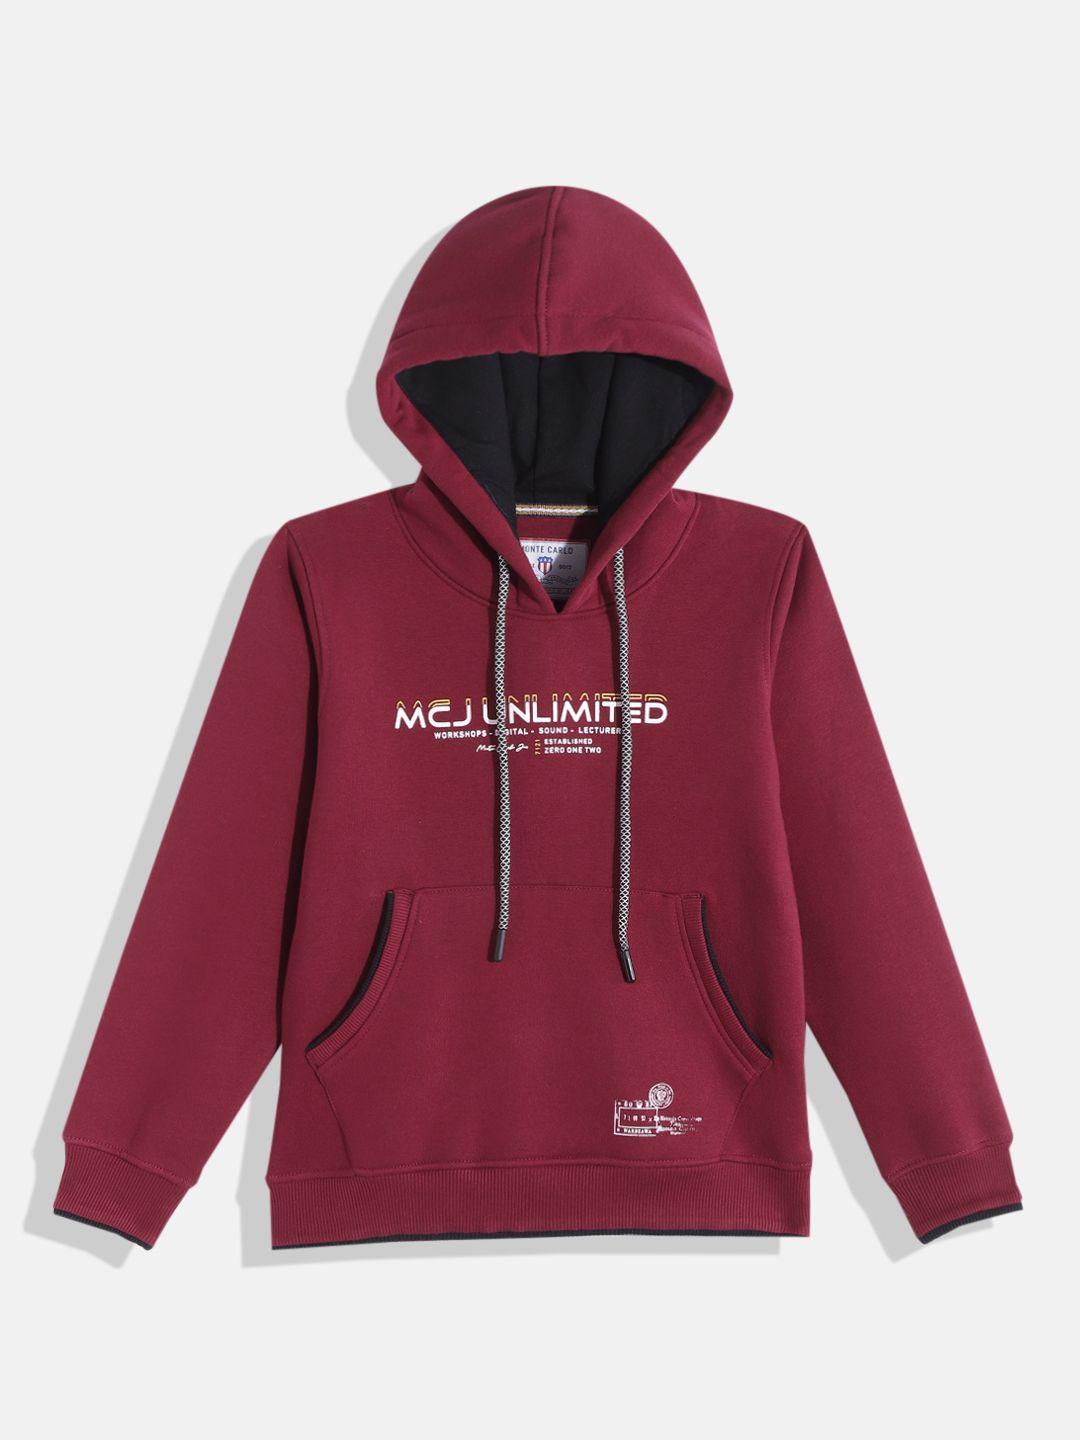 monte carlo boys maroon typography printed hooded sweatshirt